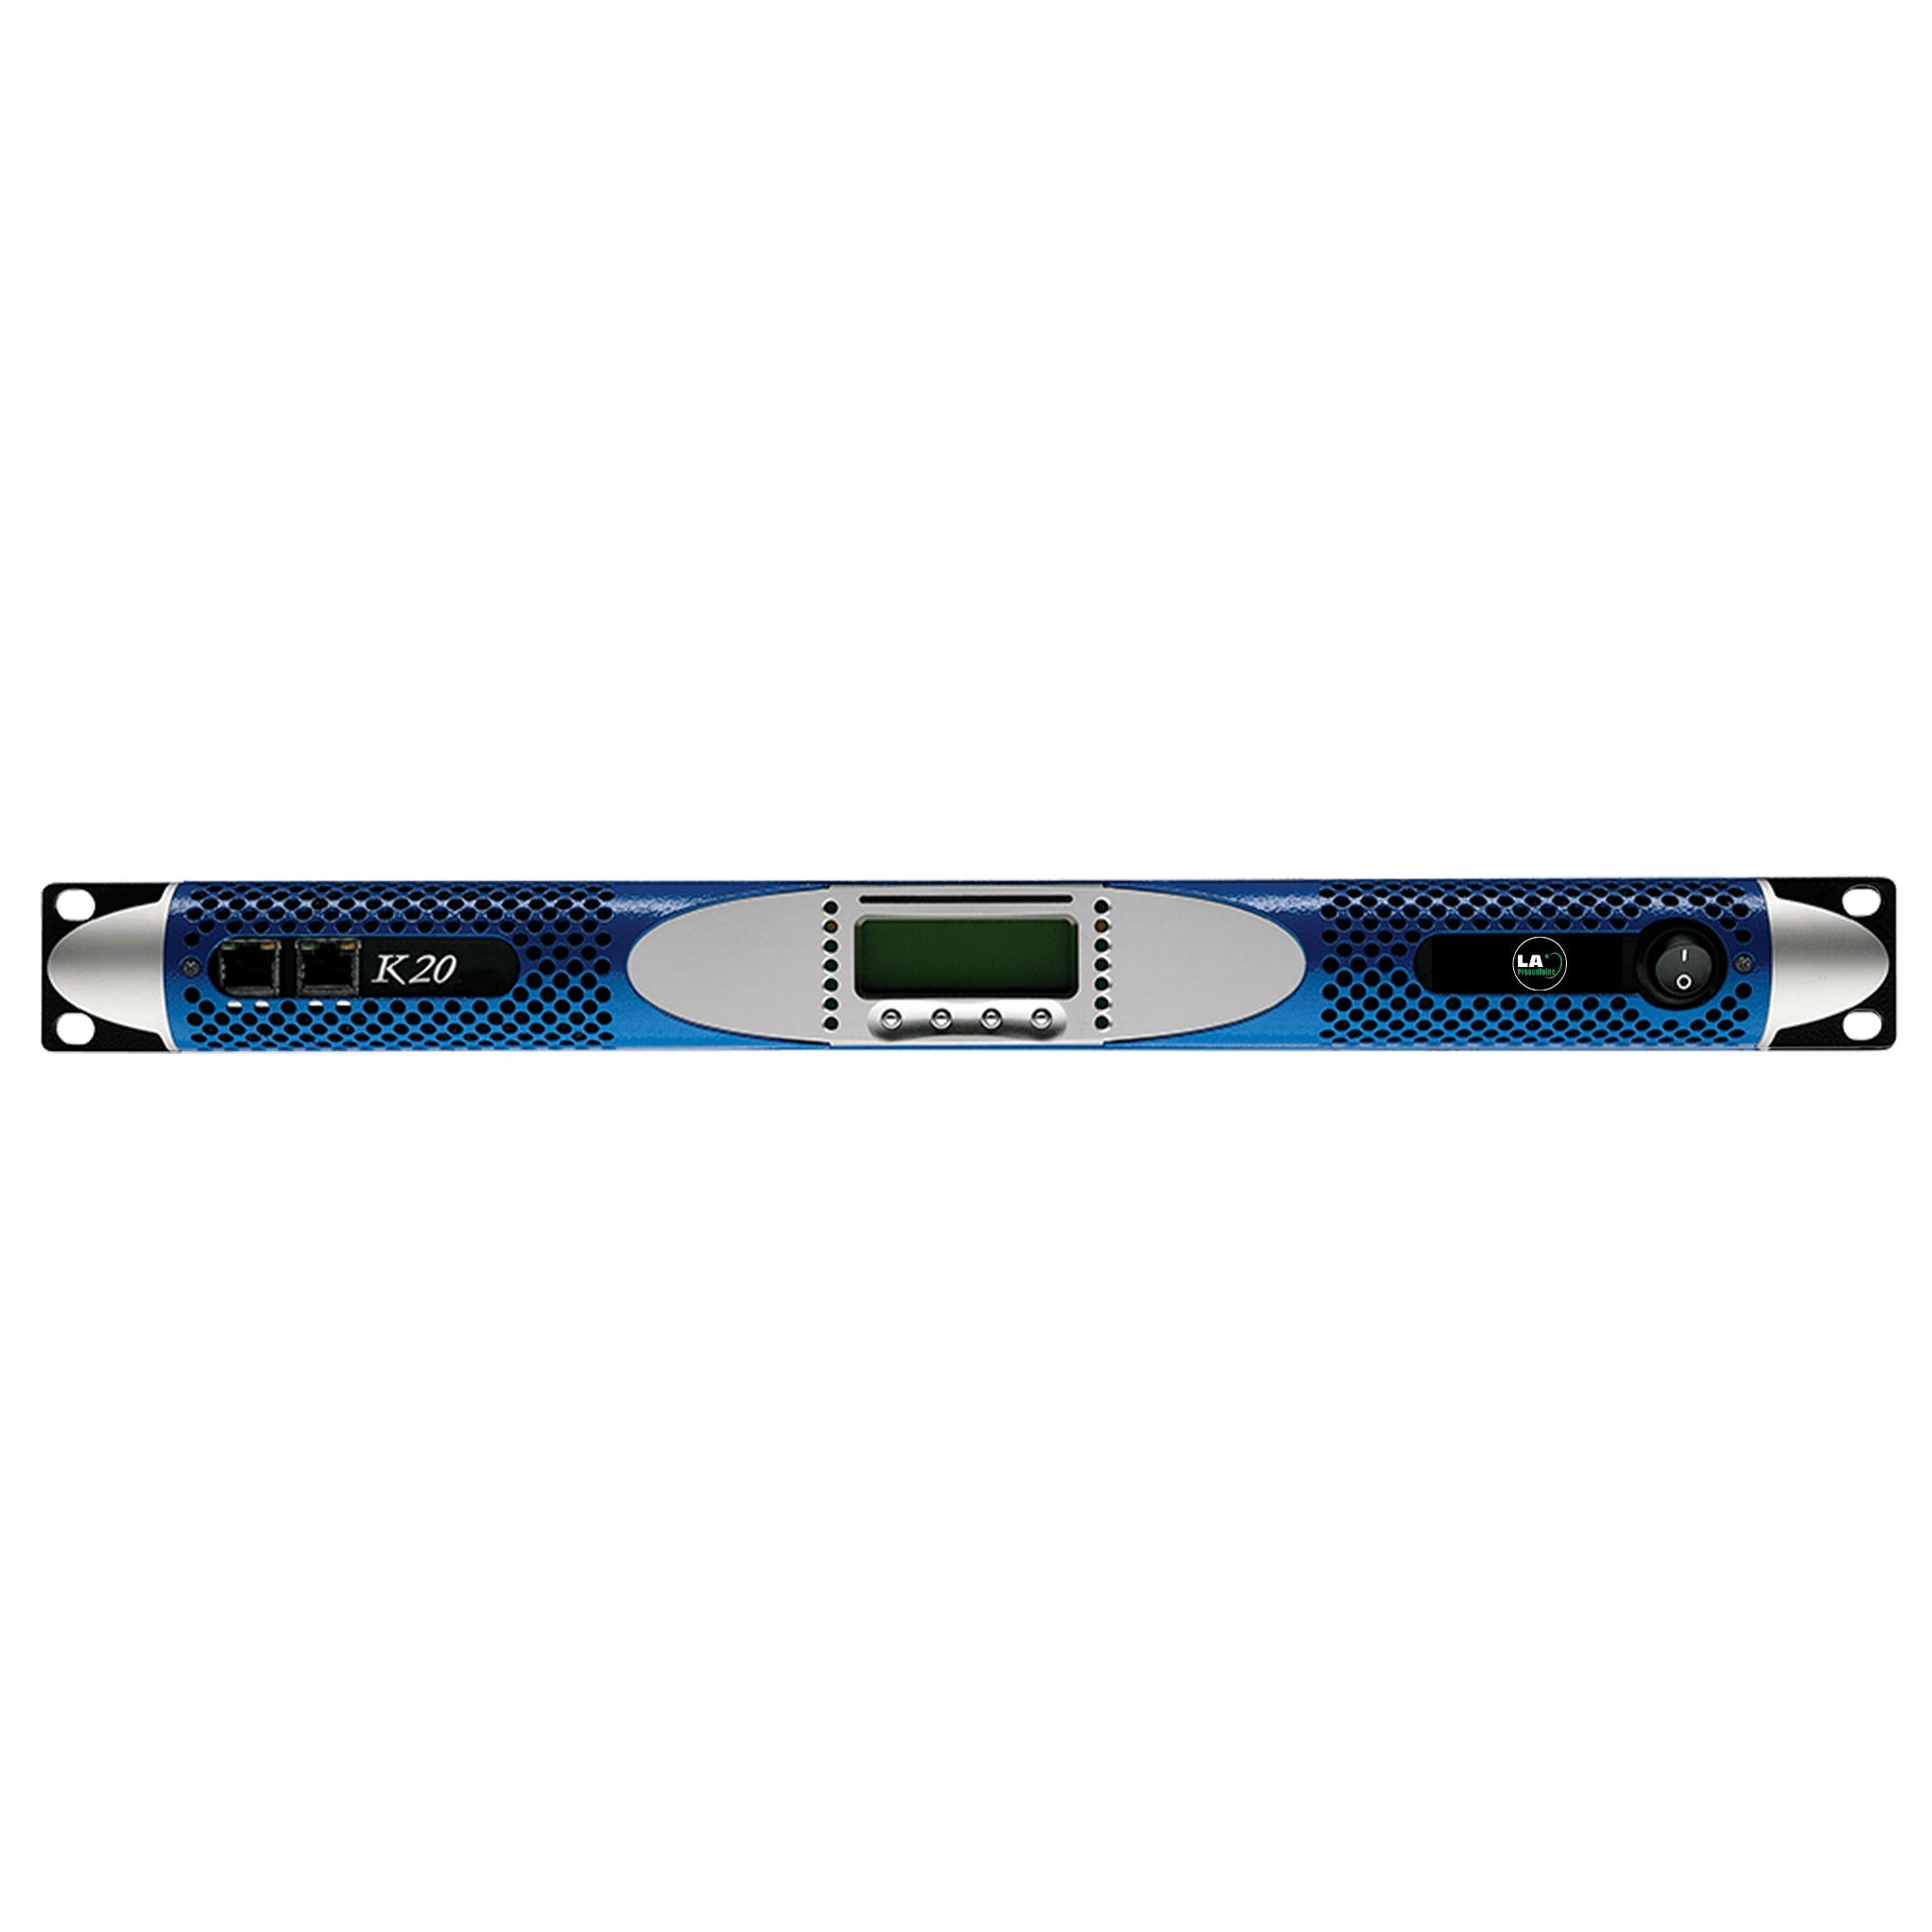 LAK20 Dual Channel Digital Amplifier